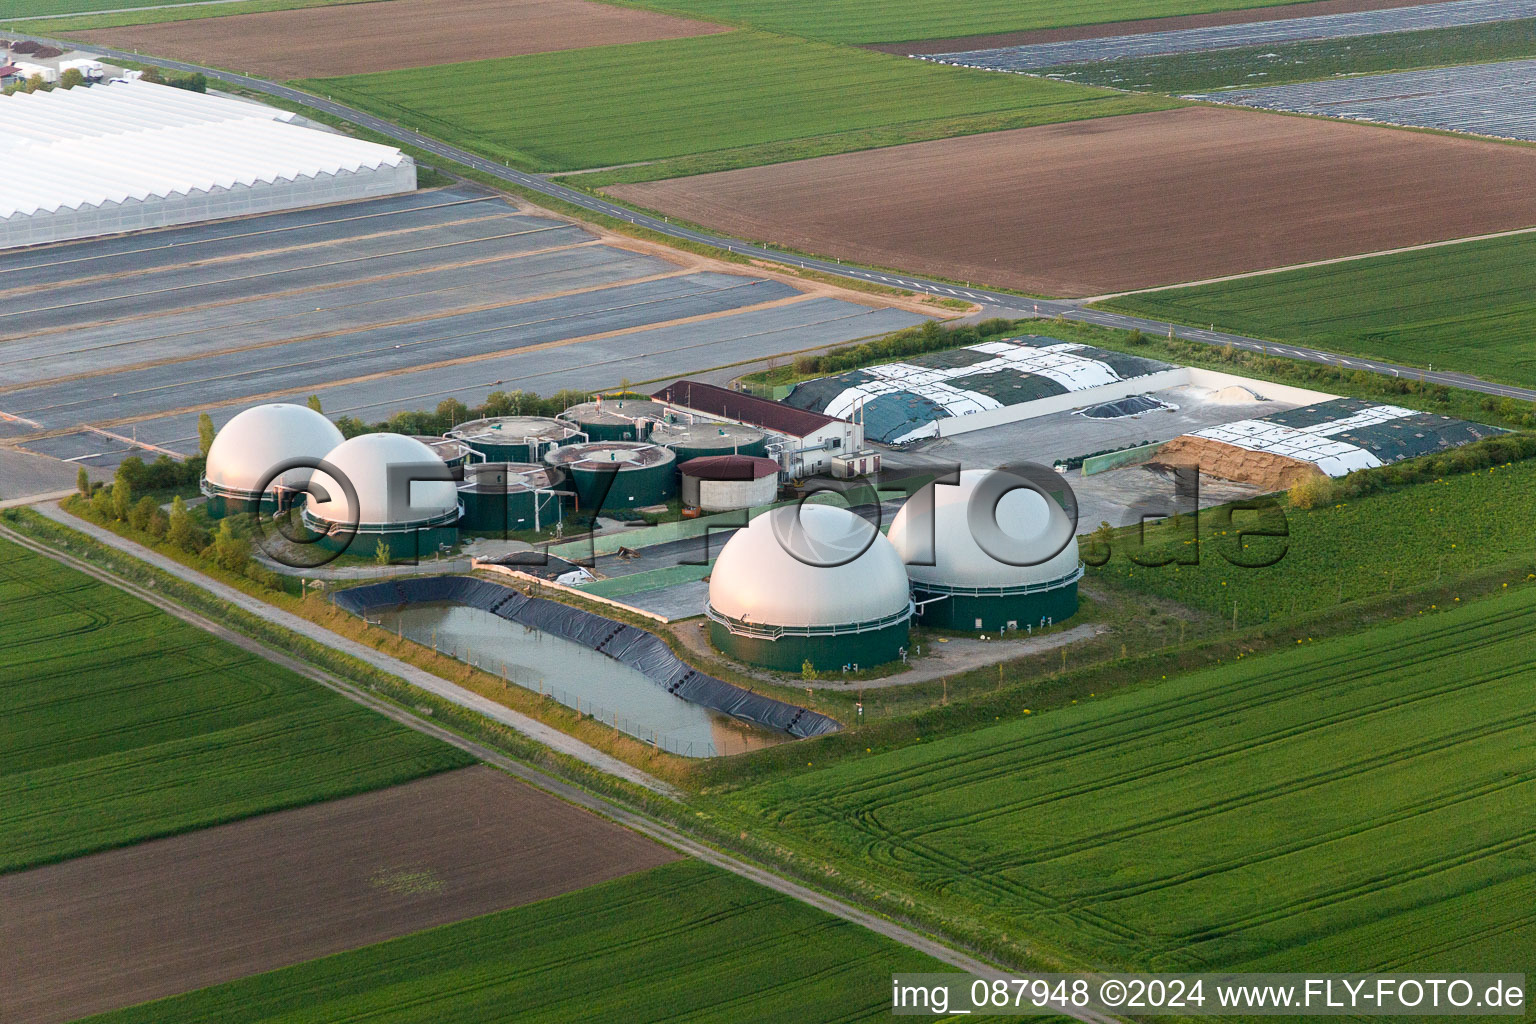 Luftbild von Glasdach- Flächen in den Gewächshausreihen zur Blumenzucht und Kuppeln einer Biogasanlage von Gartenbau Gernert im Ortsteil Oberspiesheim in Kolitzheim im Bundesland Bayern, Deutschland